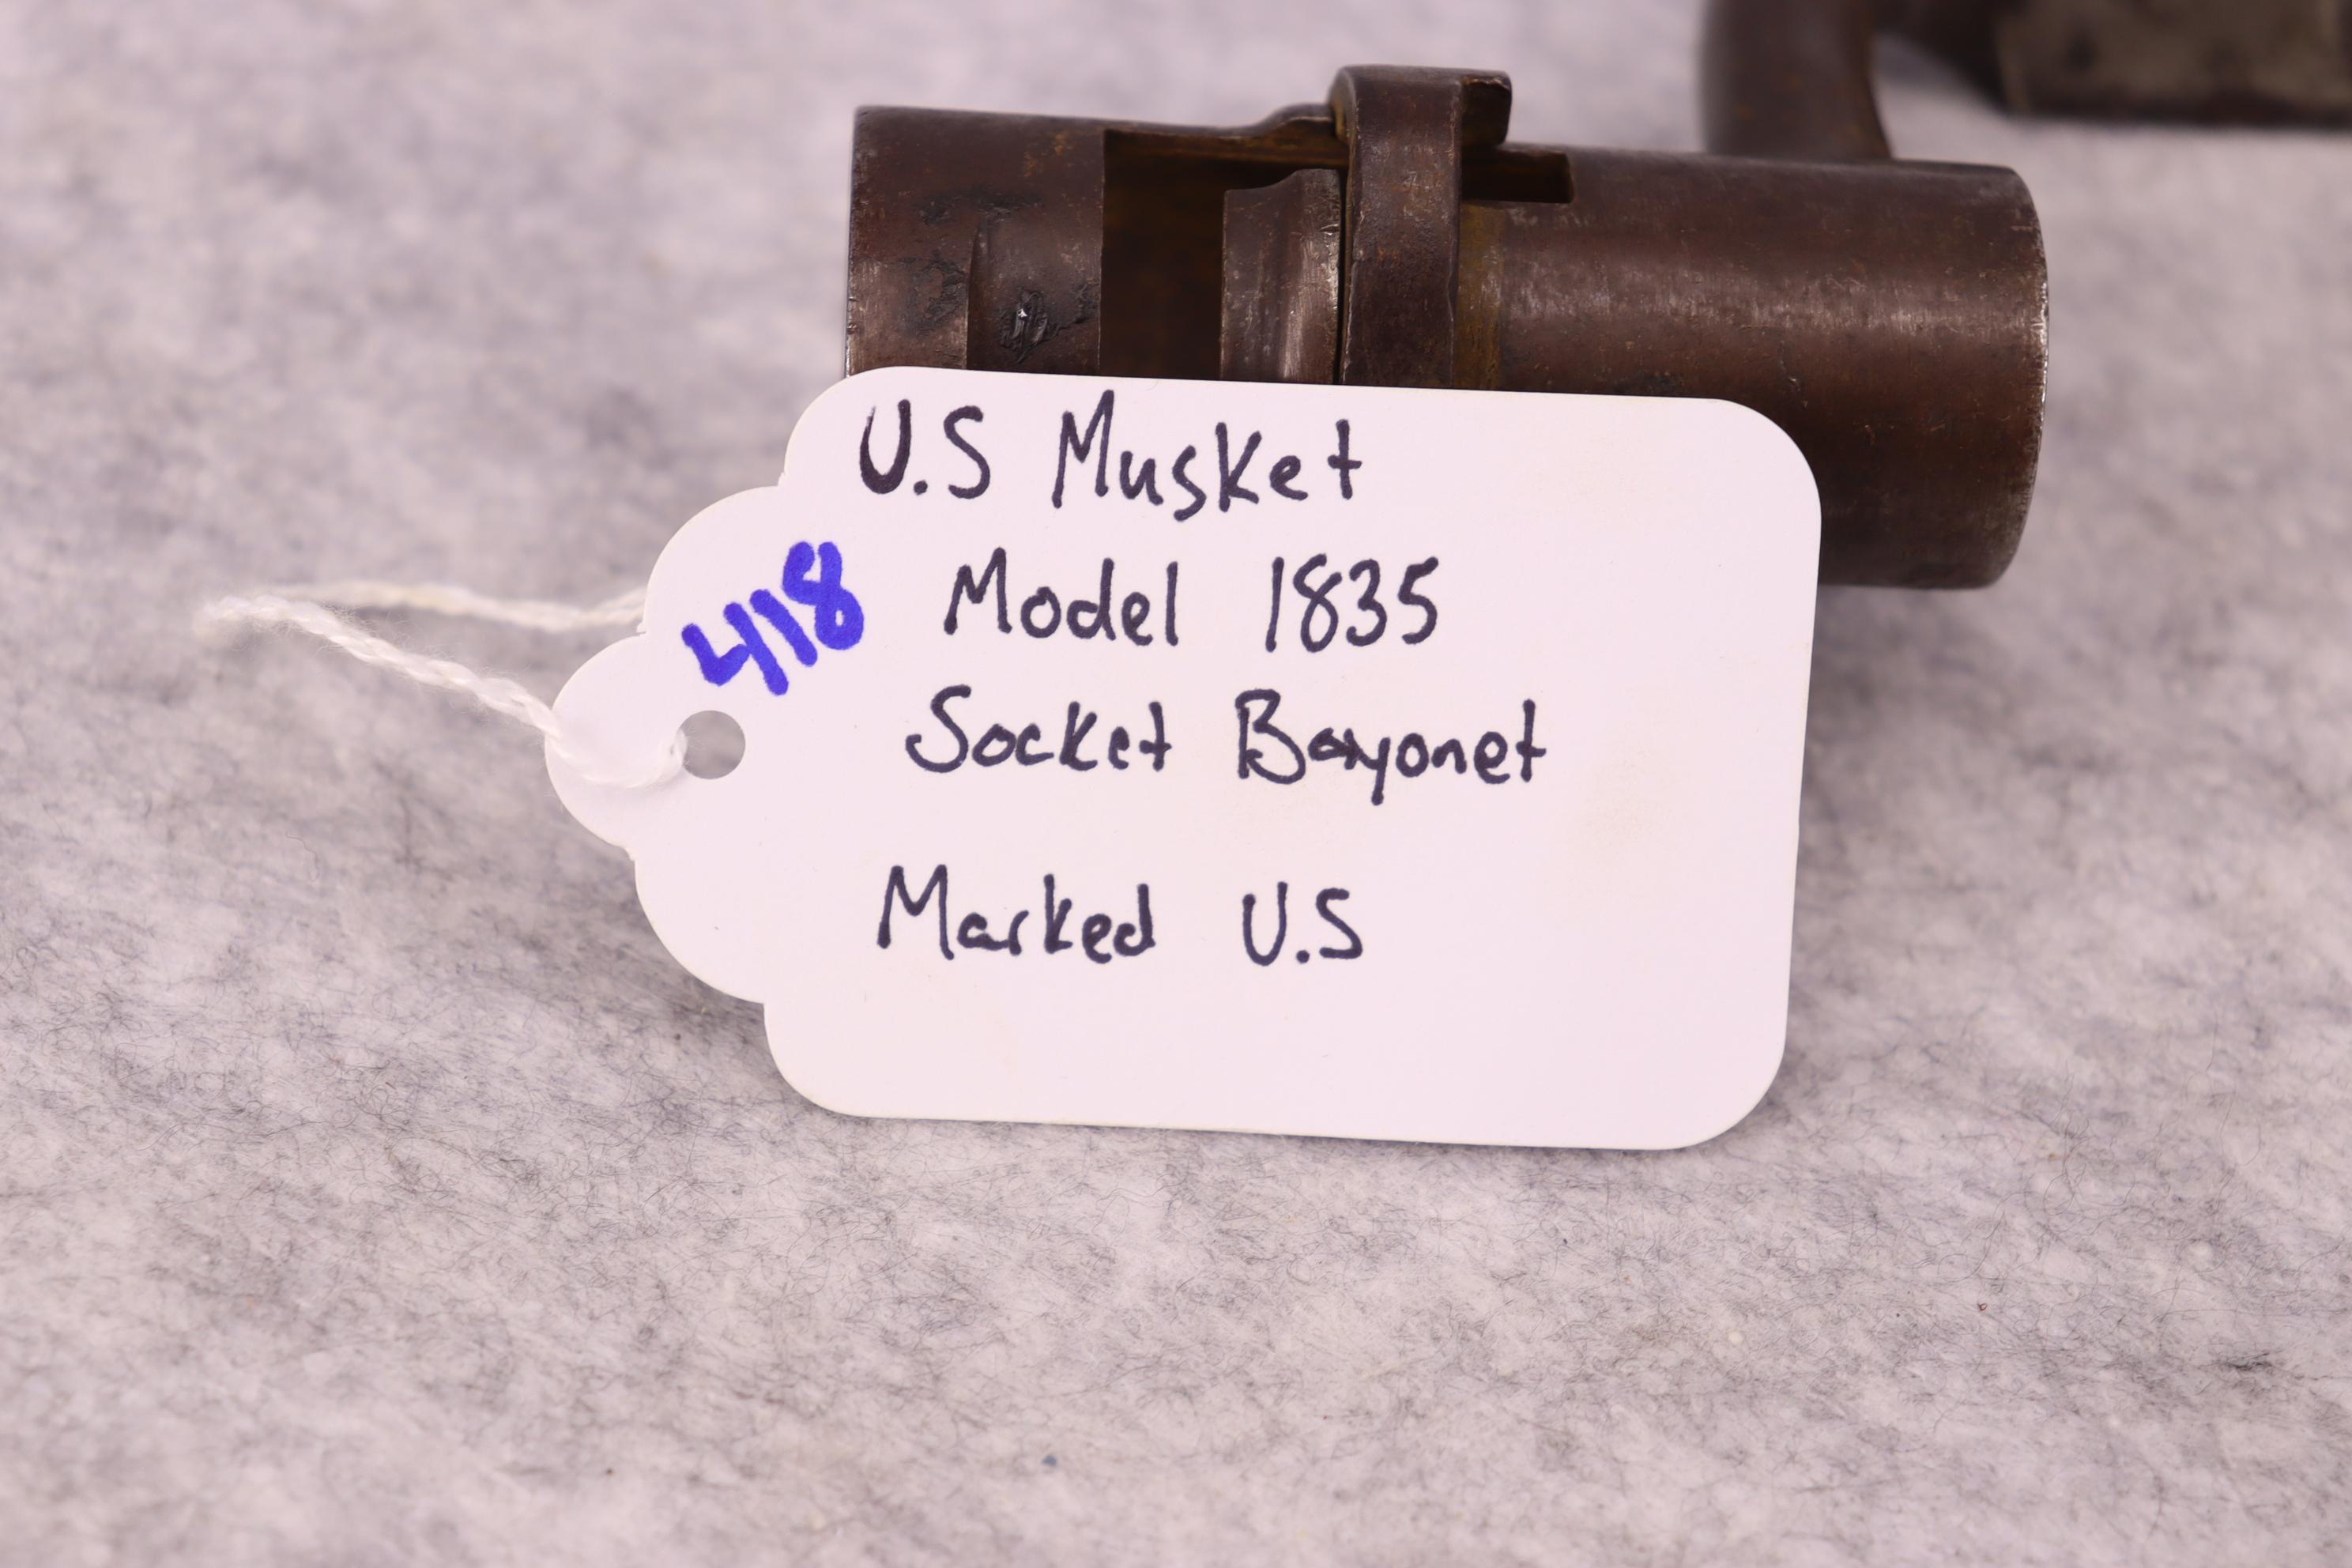 U.S. Musket Model 1835 Socket Bayonet Marked U.S